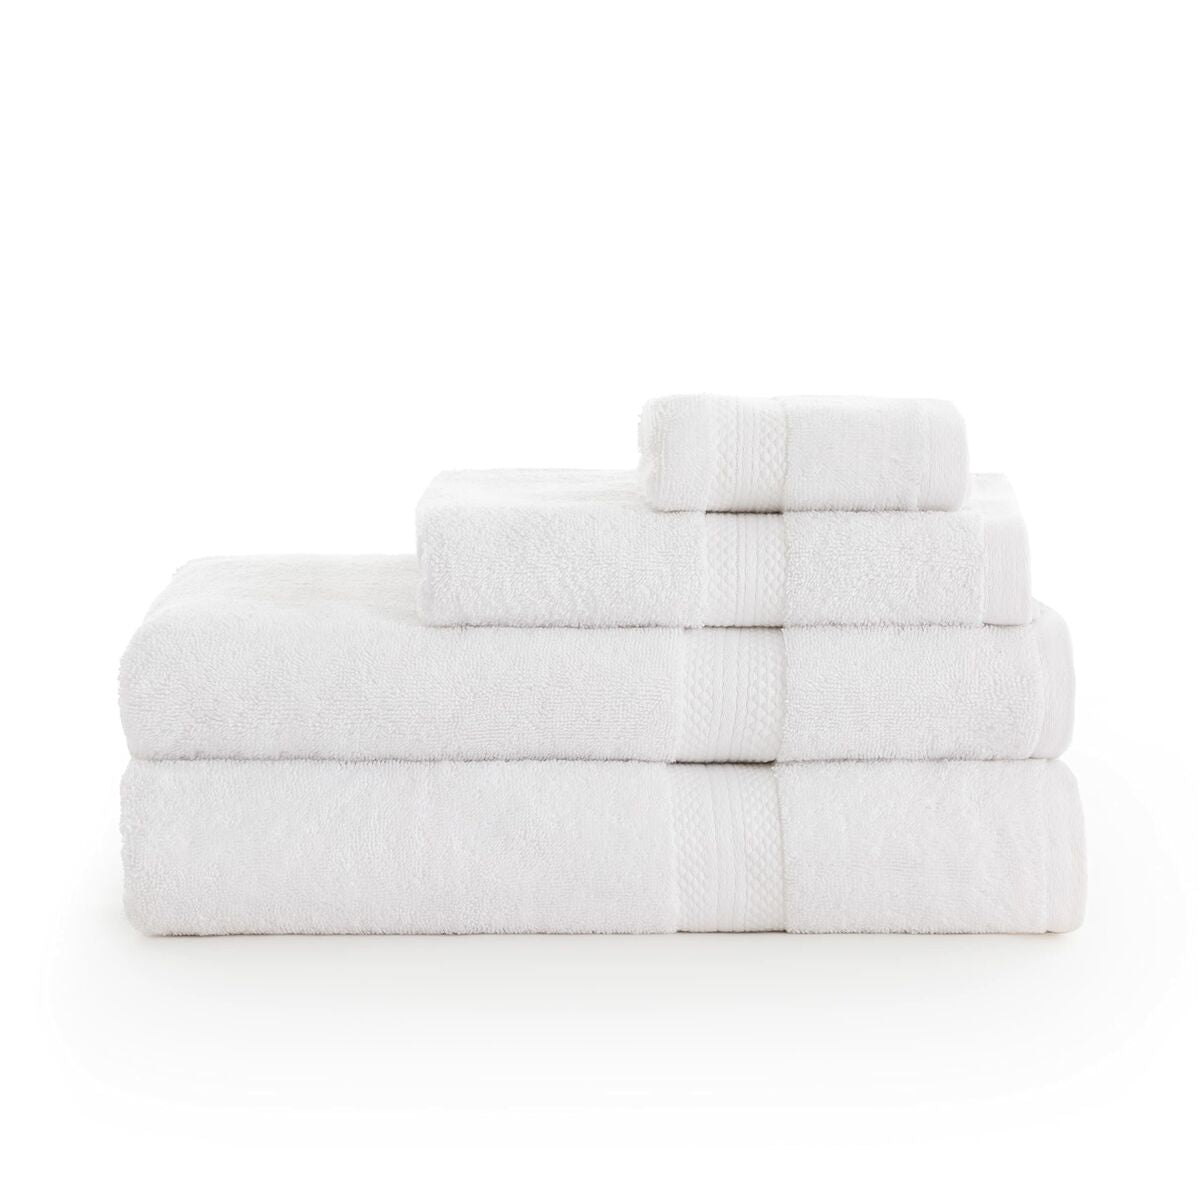 Bath towel SG Hogar White 100x 150 cm